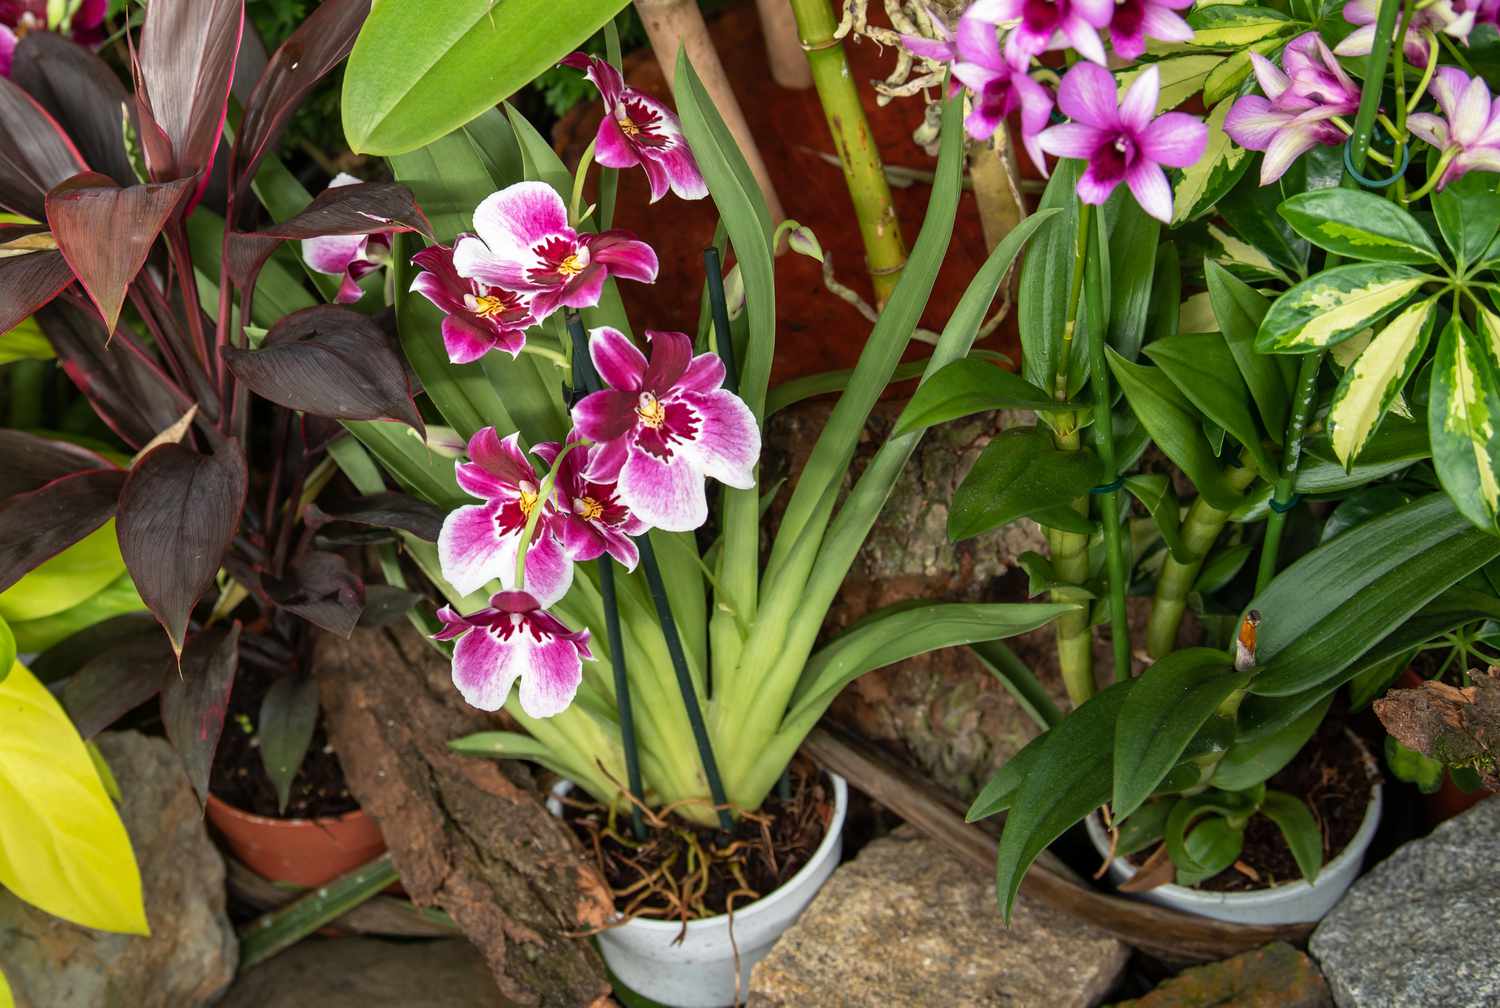 Miltonia-Orchideen in weißen Töpfen mit langen Blättern und rosa und weißen Blüten